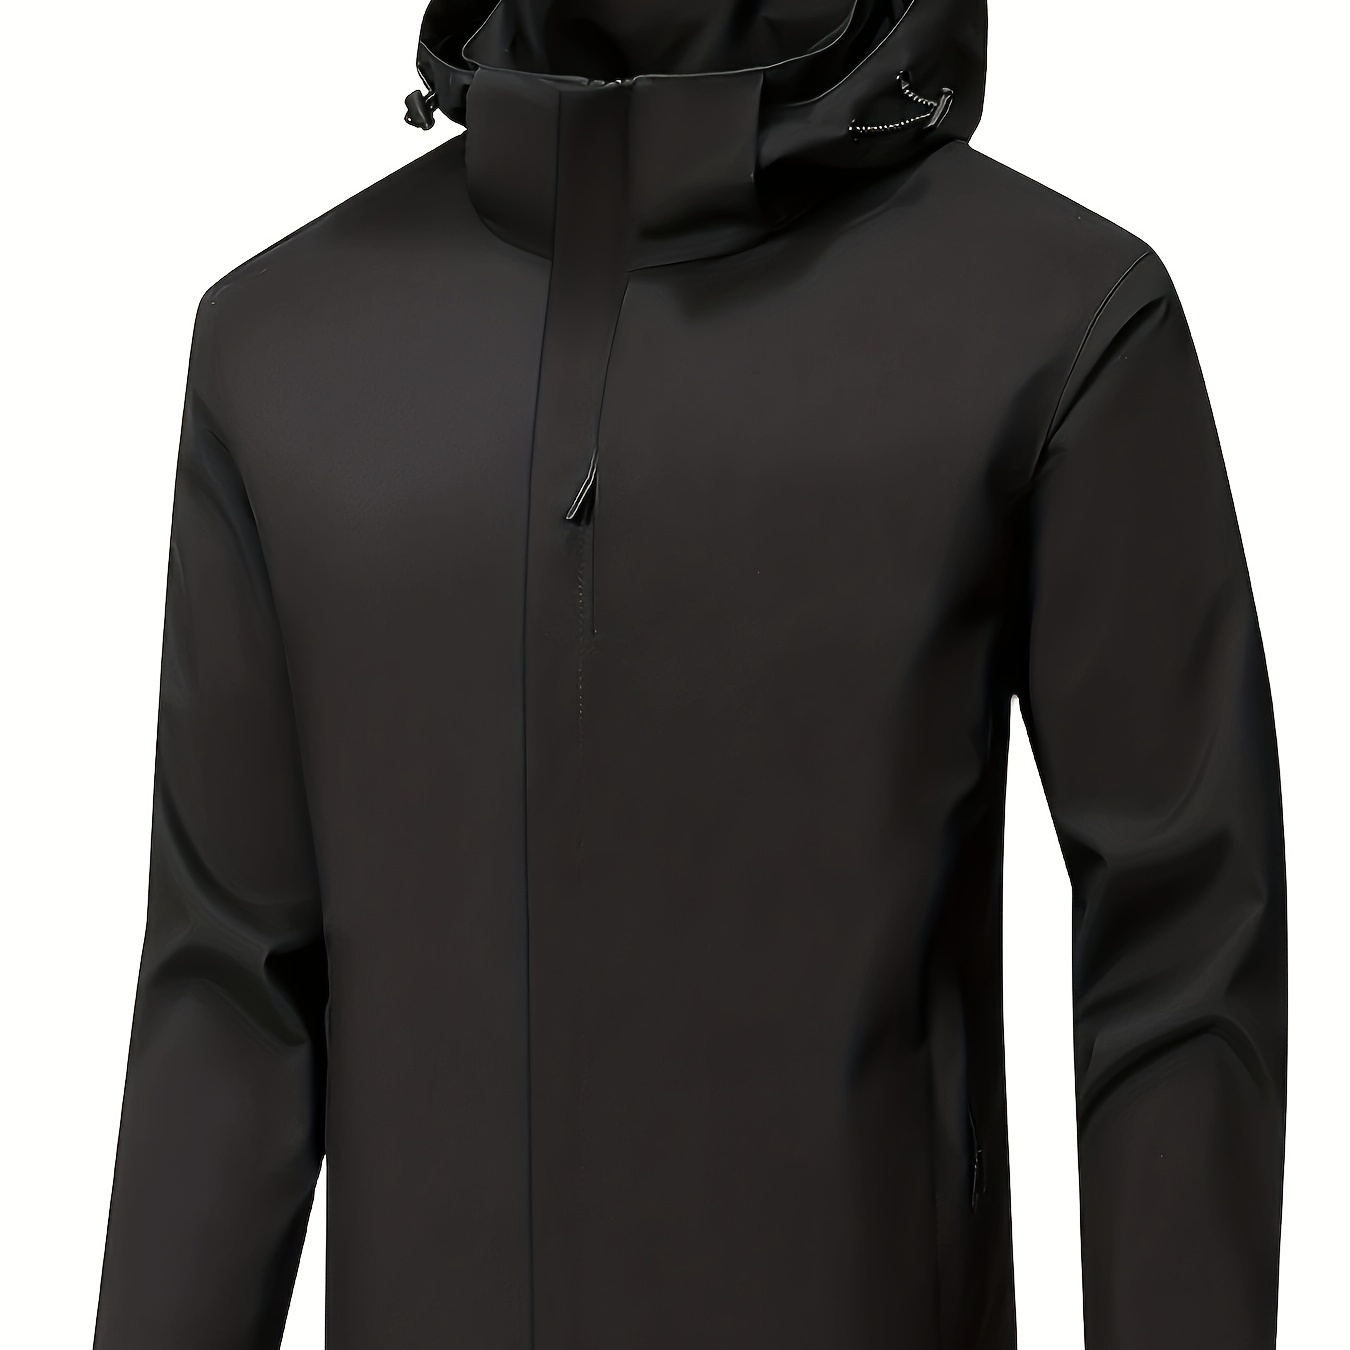 

Men's Water And Wind Resistant Hooded Jacket, Zip-up Windbreaker For Outdoor Activities